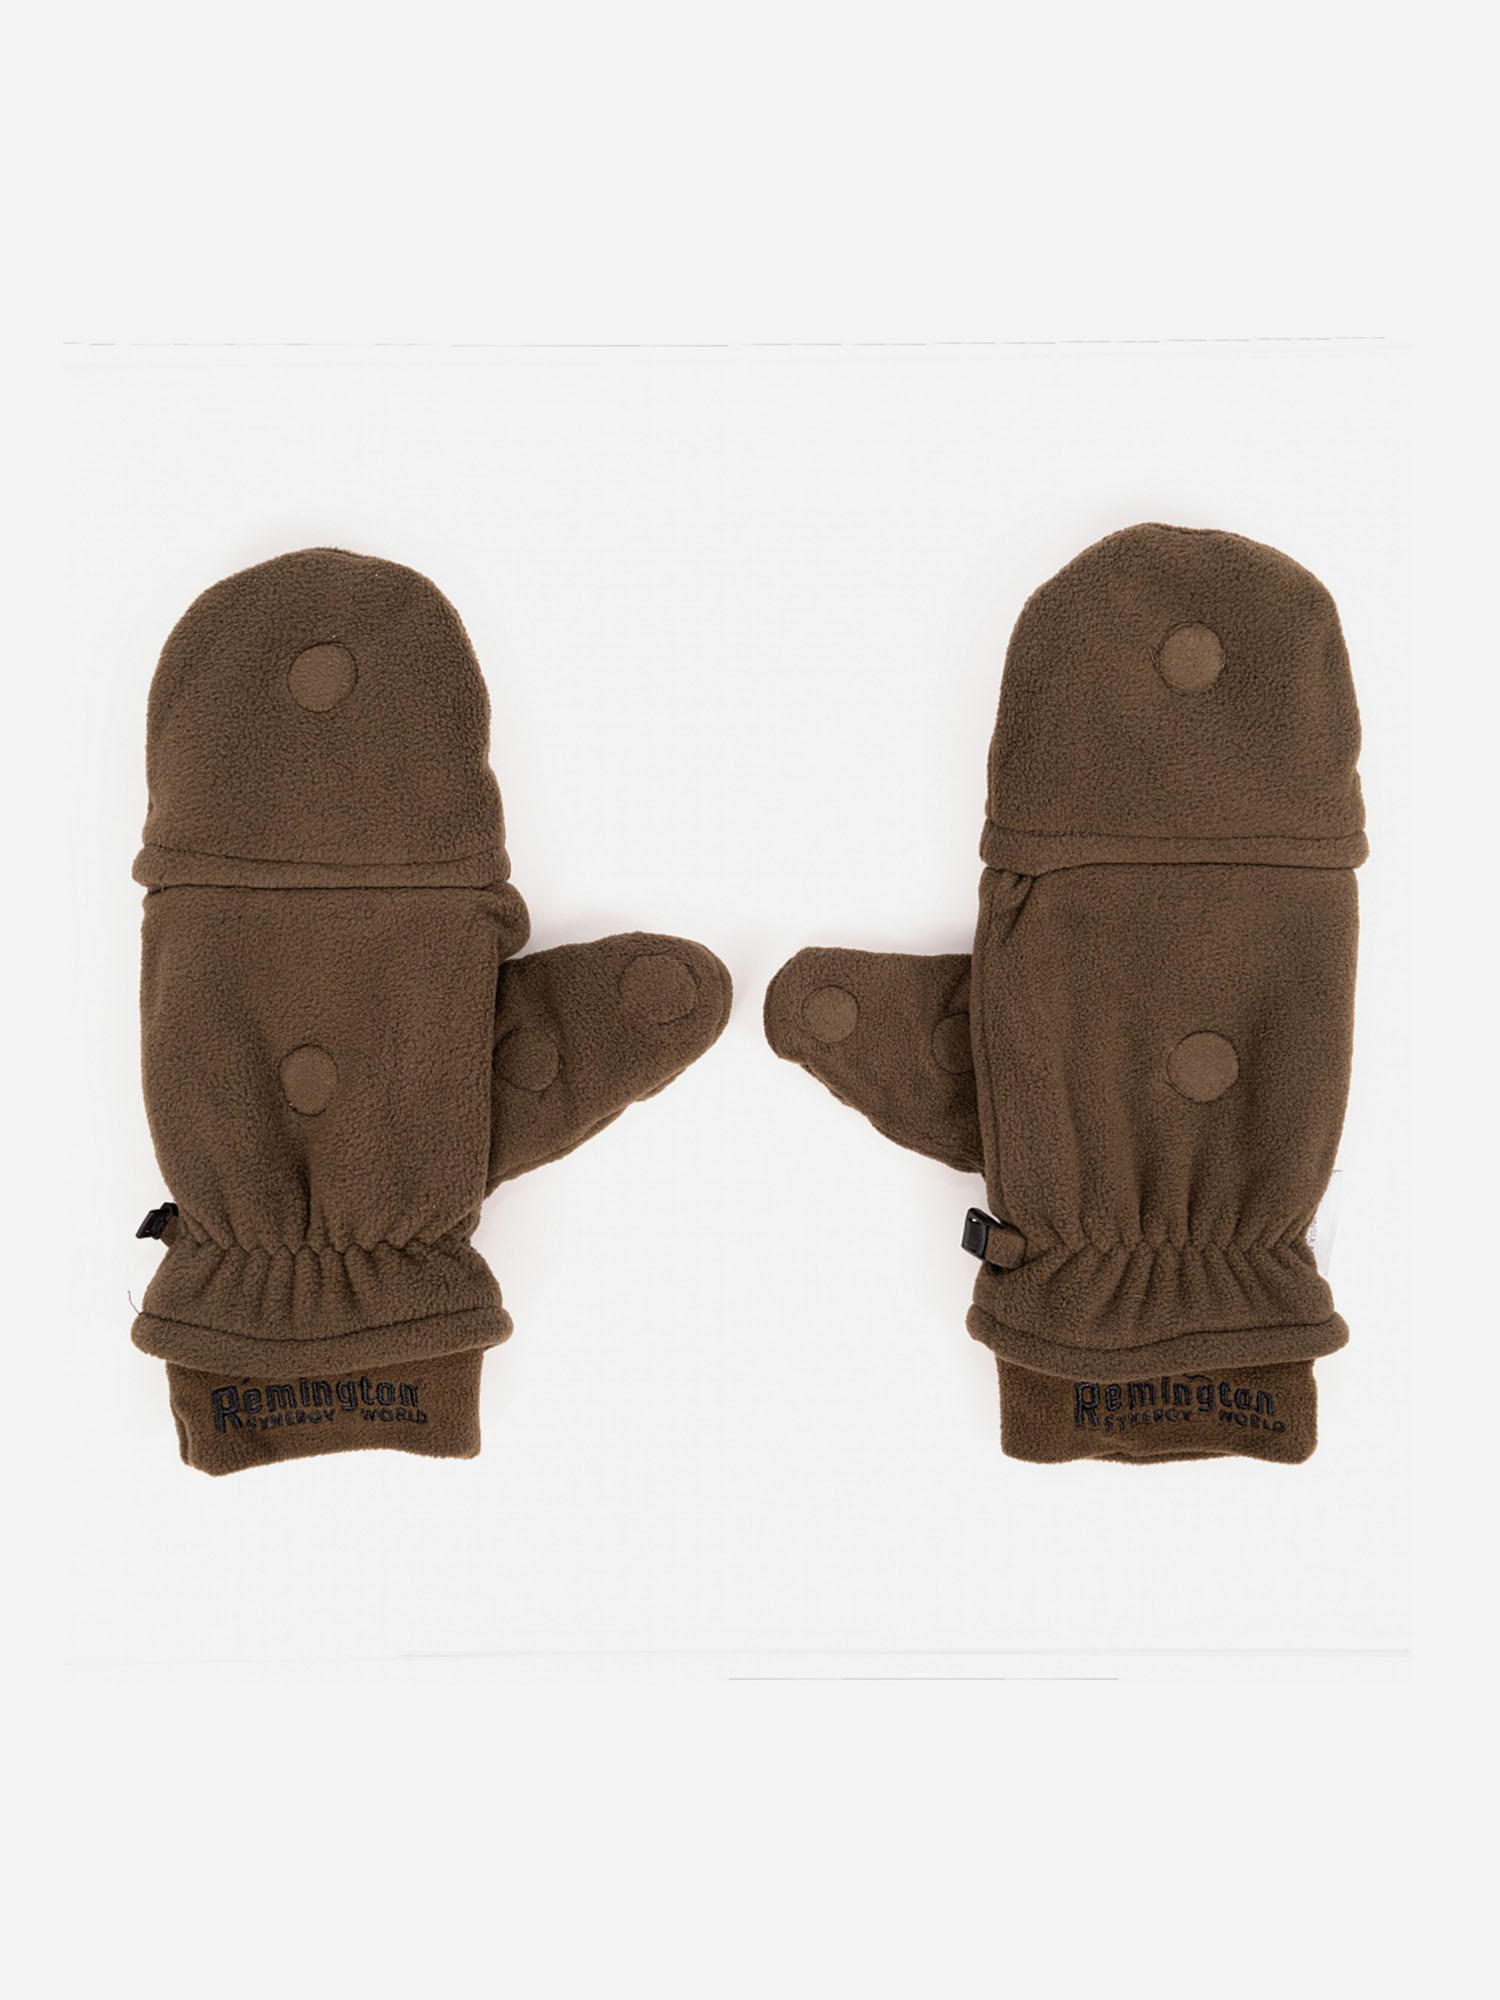 Перчатки Remington Тoeless brown, Коричневый перчатки тренировочные everlast 1910 classic 16oz p00002506 brown